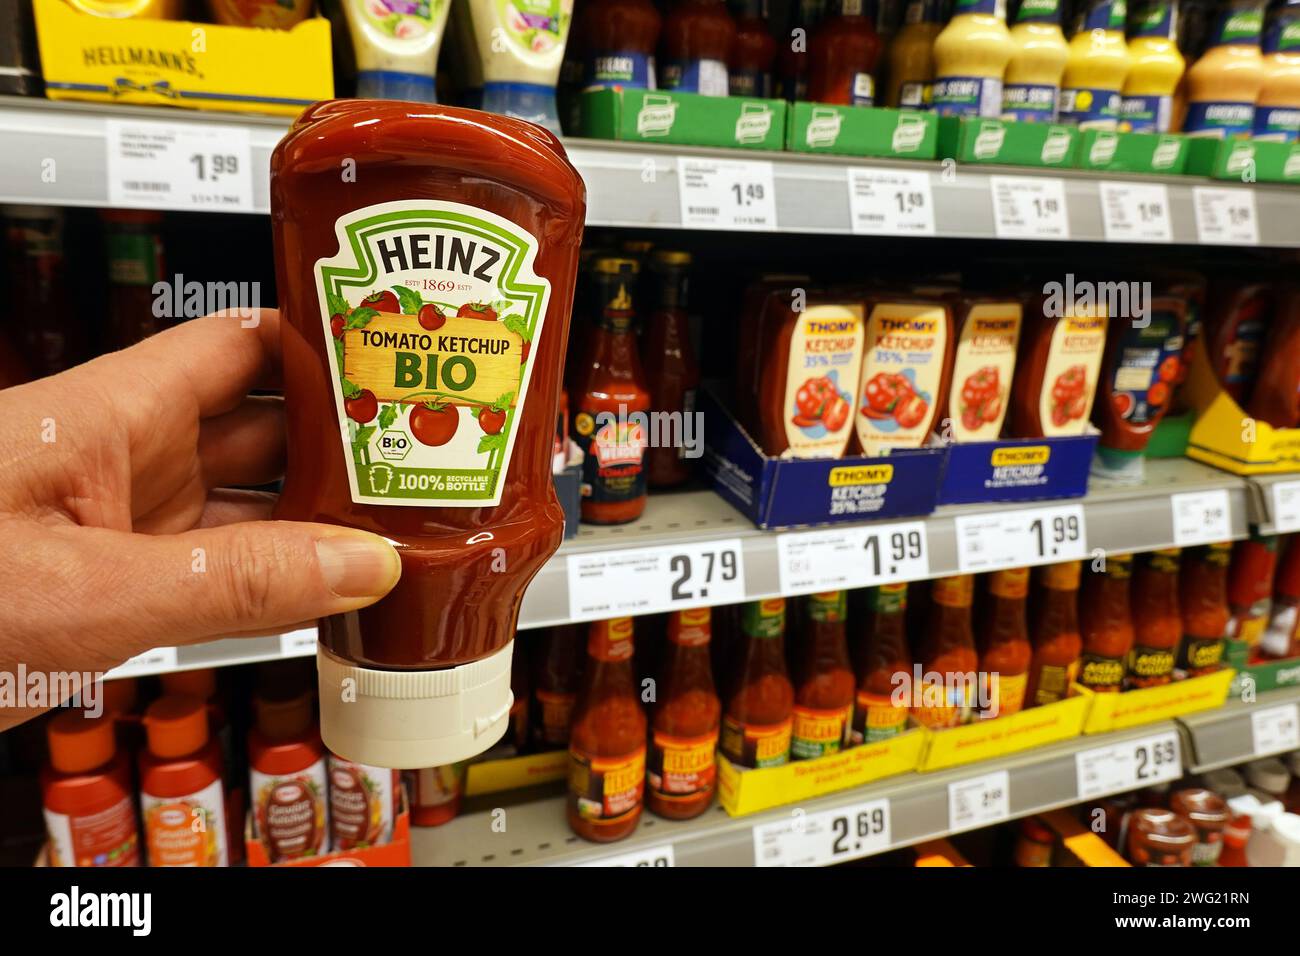 Heinz tomate ketchup dans une épicerie Banque D'Images